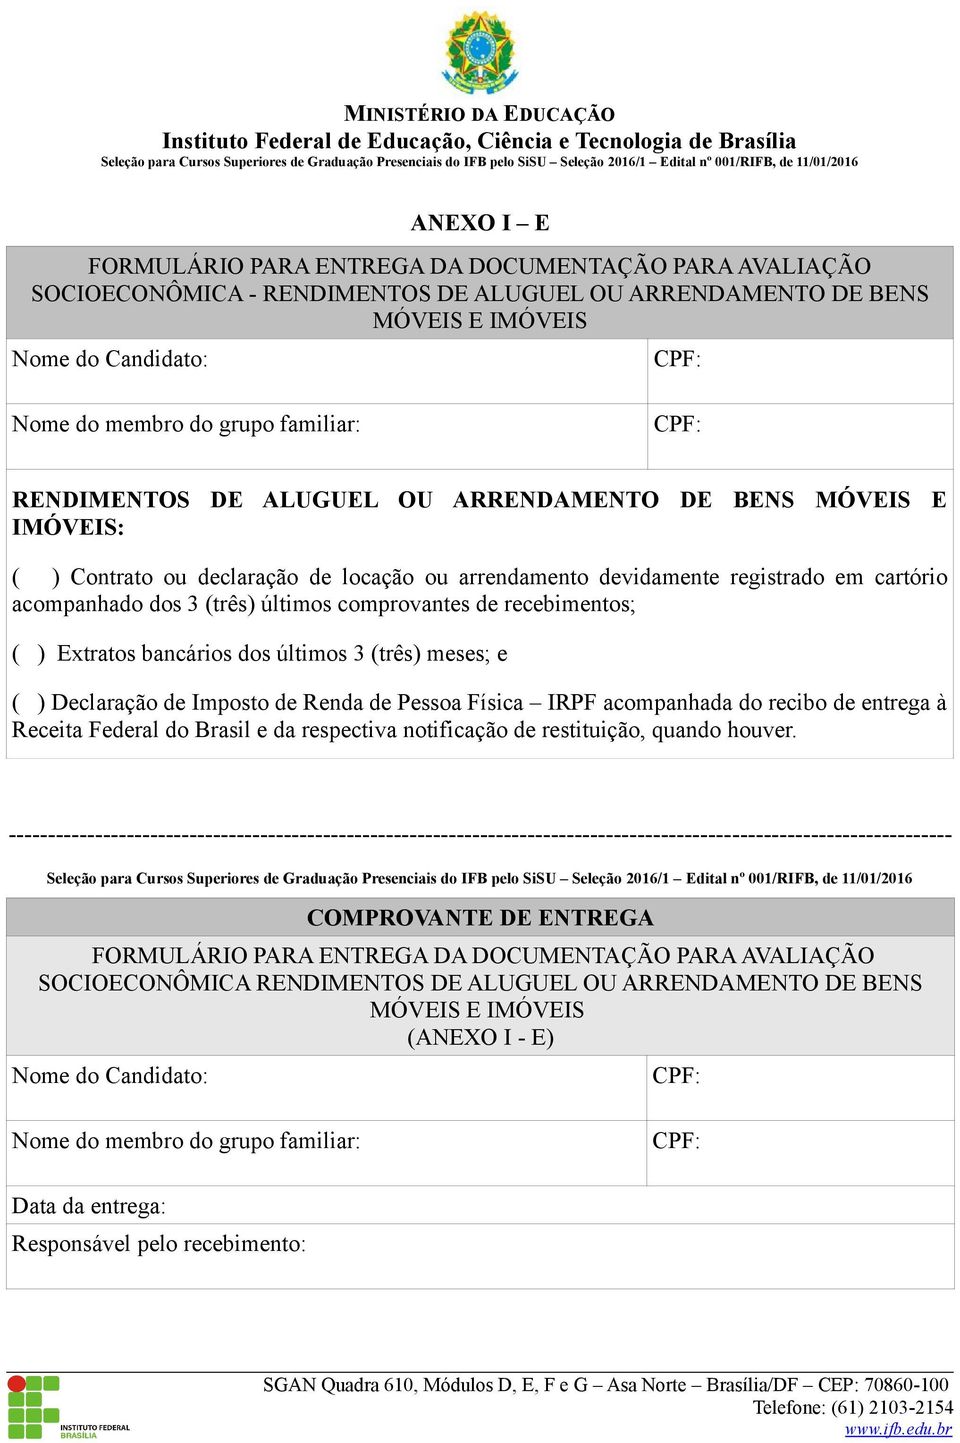 Declaração de Imposto de Renda de Pessoa Física IRPF acompanhada do recibo de entrega à Receita Federal do Brasil e da respectiva notificação de restituição, quando houver.